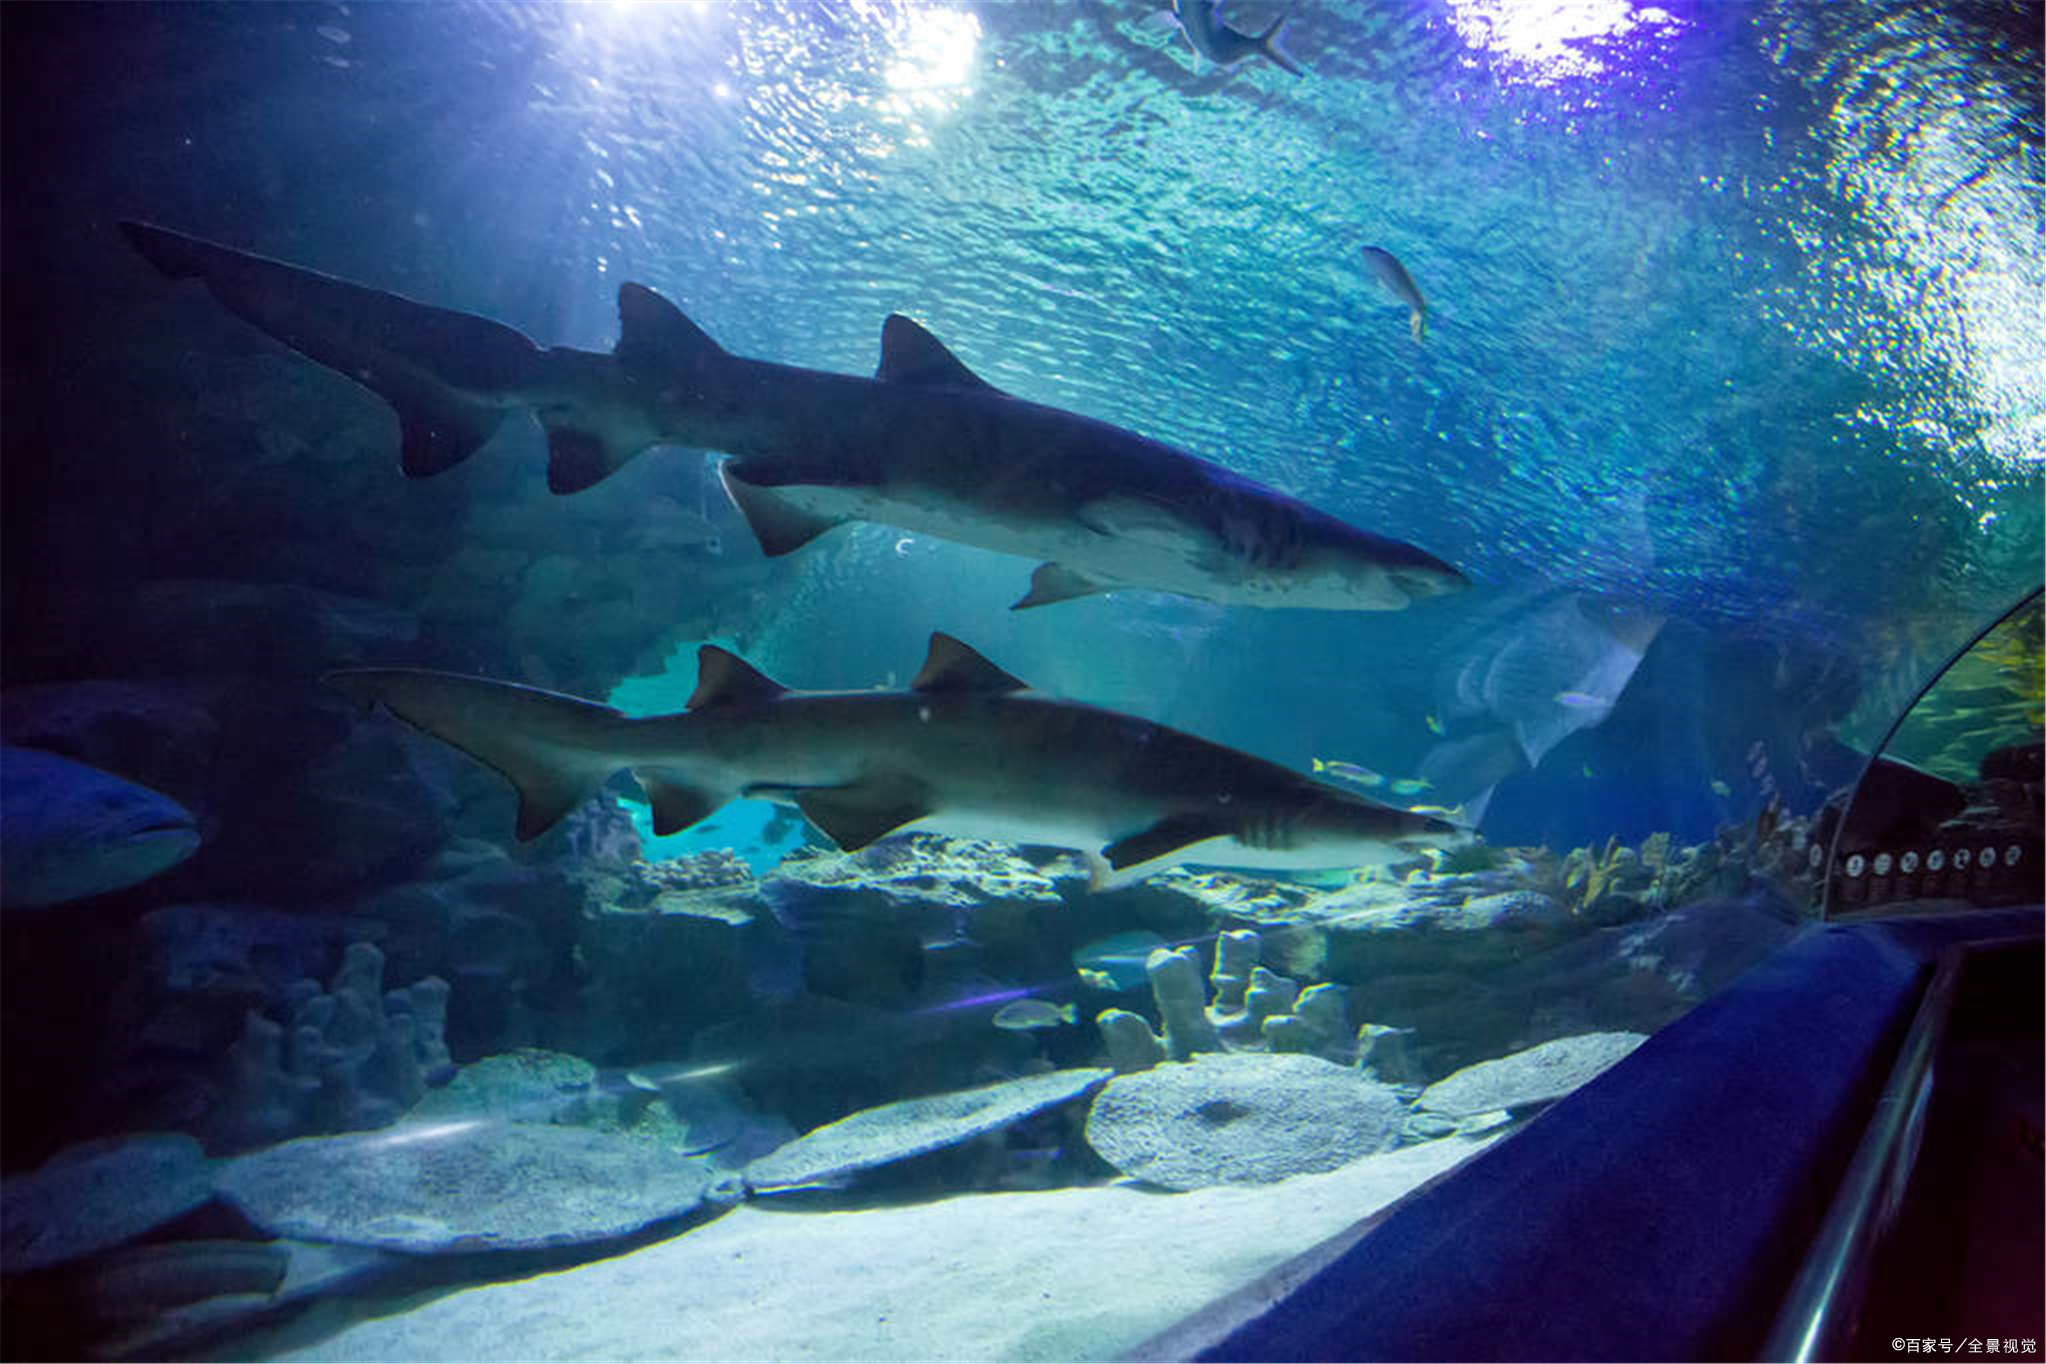 走近科学:如果你一不小心掉到鲨鱼池,究竟该如何保命?